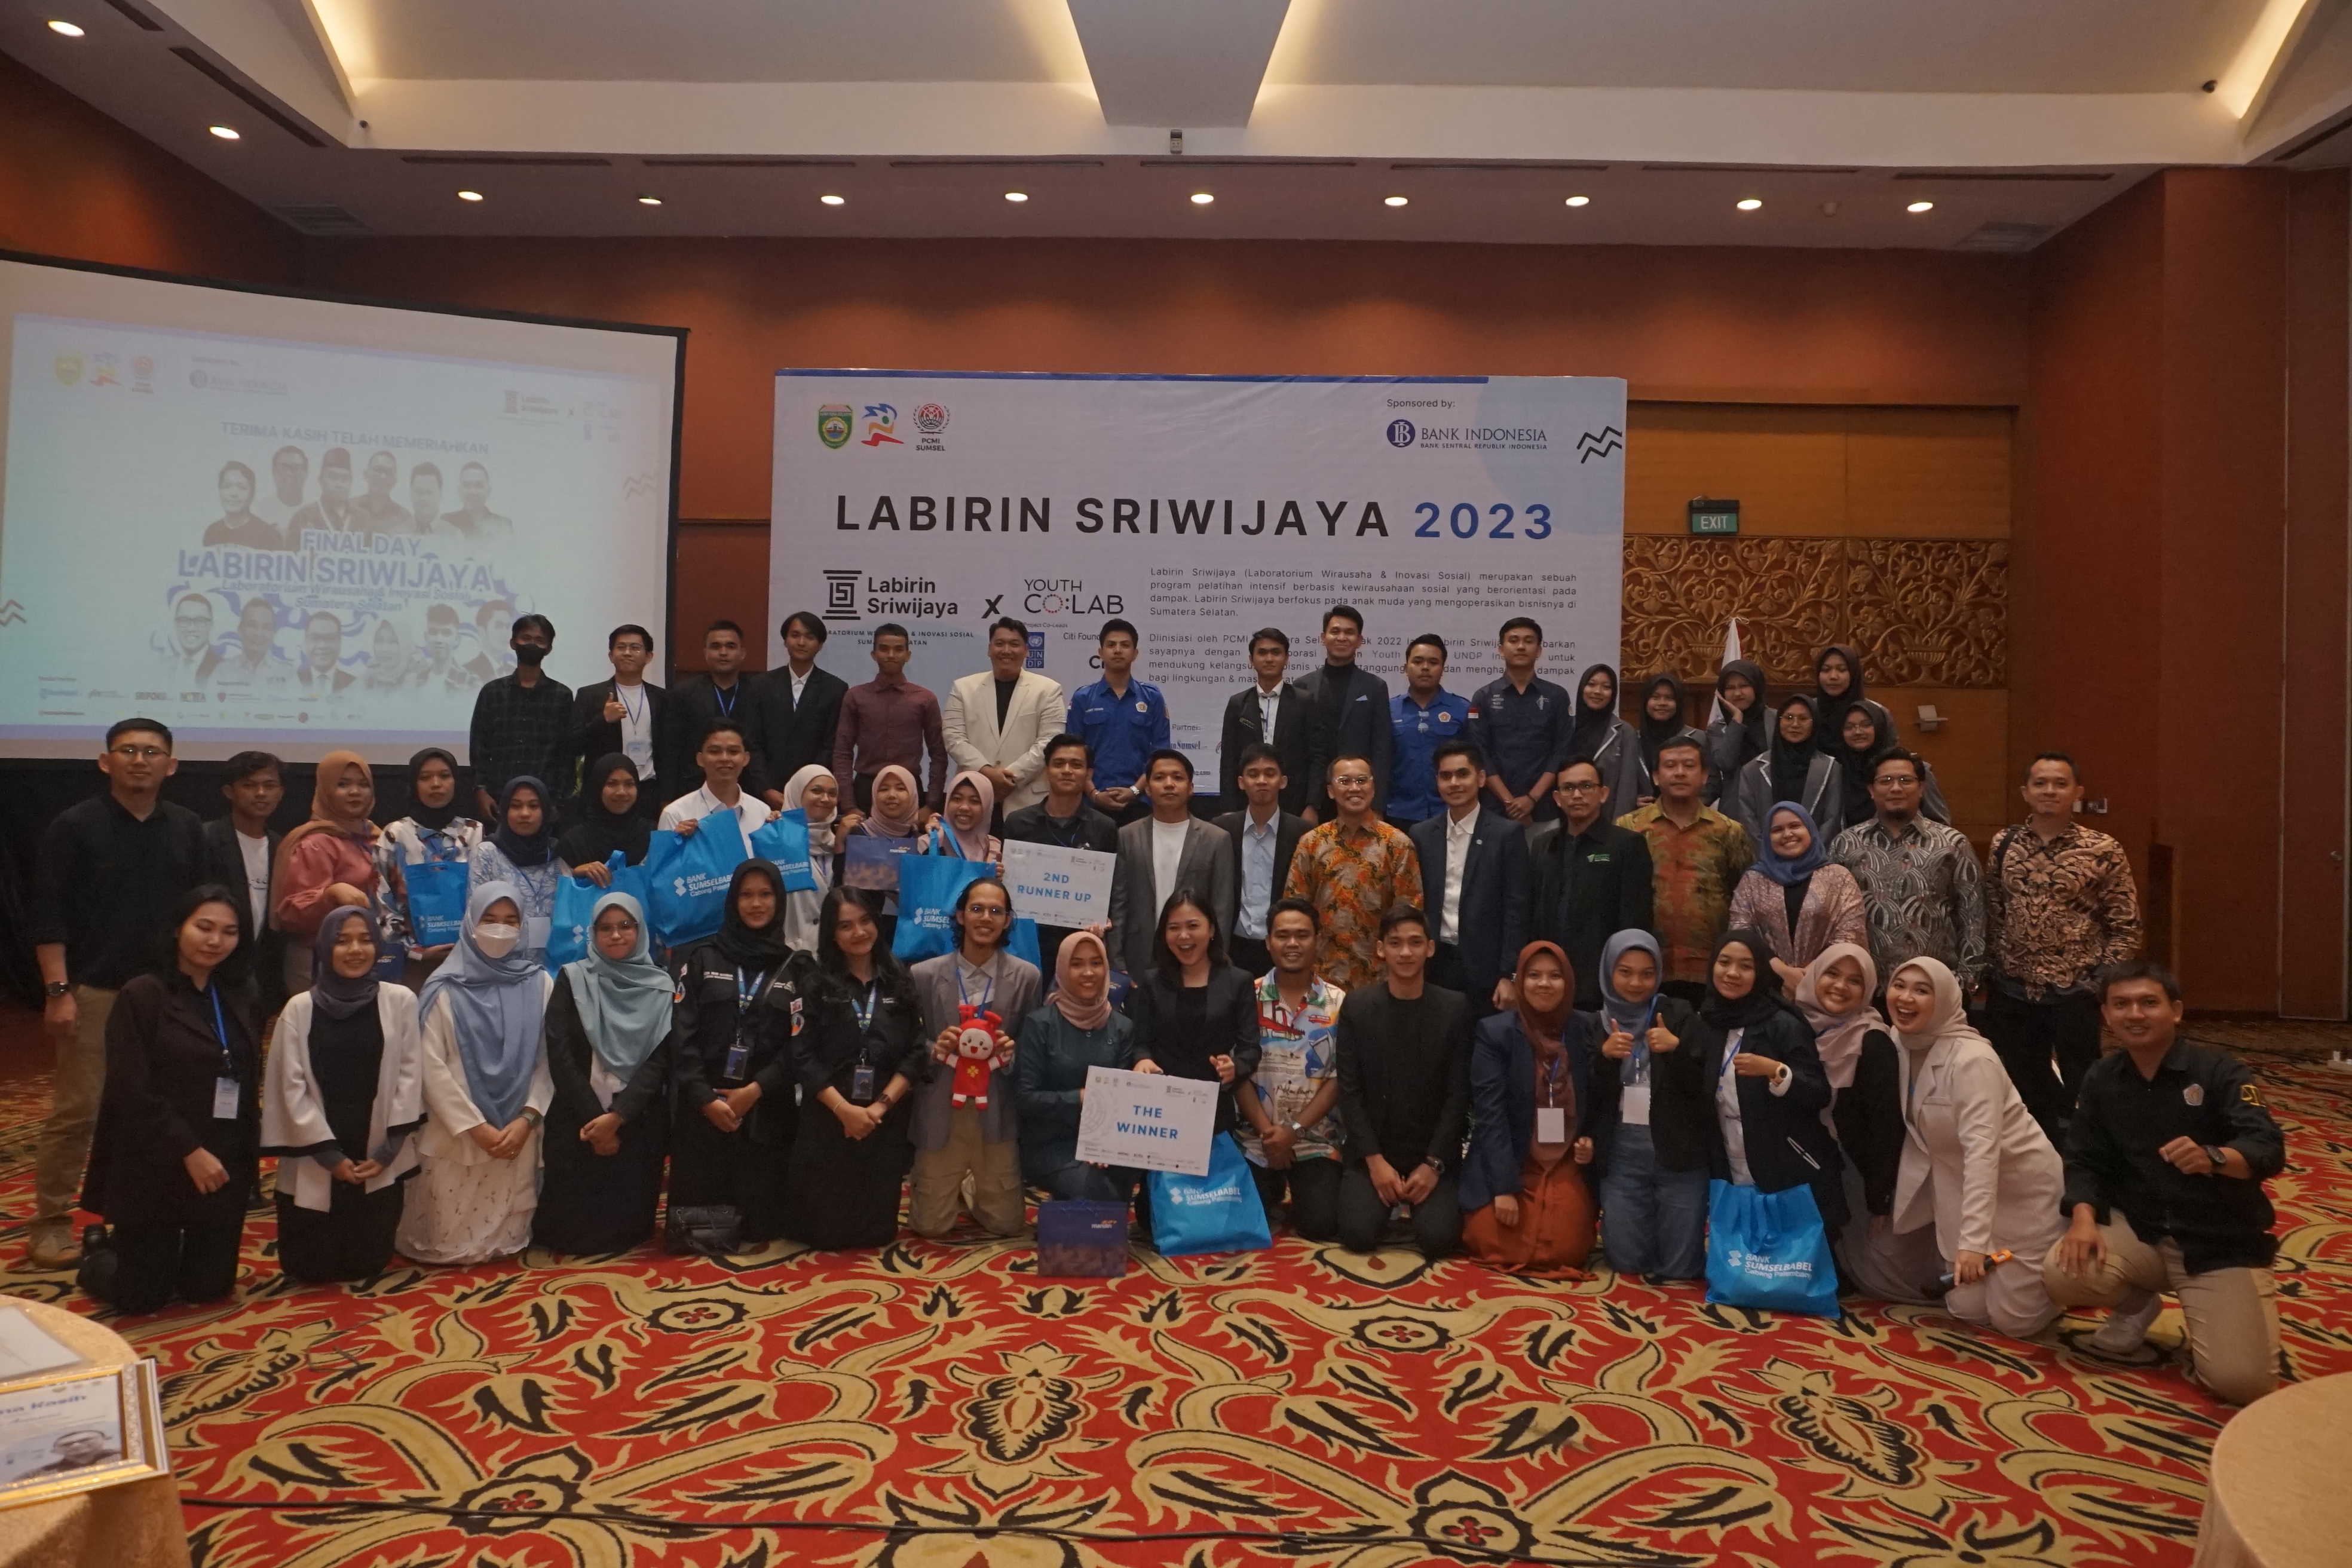 Labirin Sriwijaya 2023 X Youth Co:Lab 